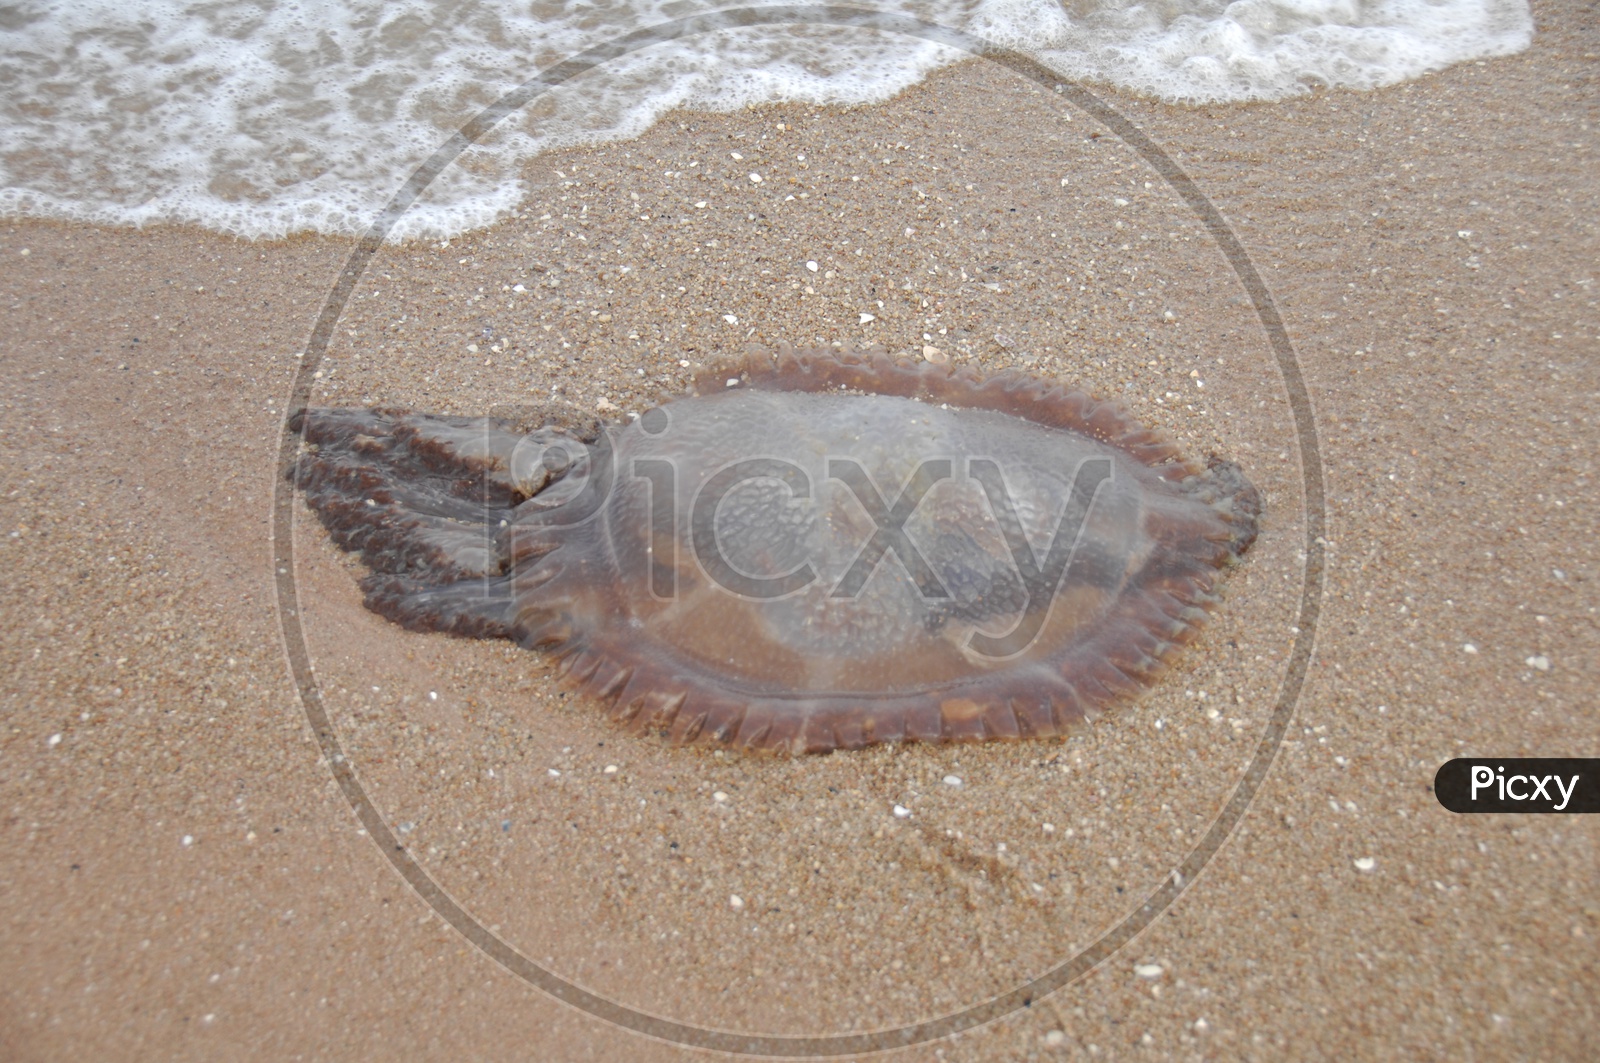 Dead Jelly Fish on Sea Shore